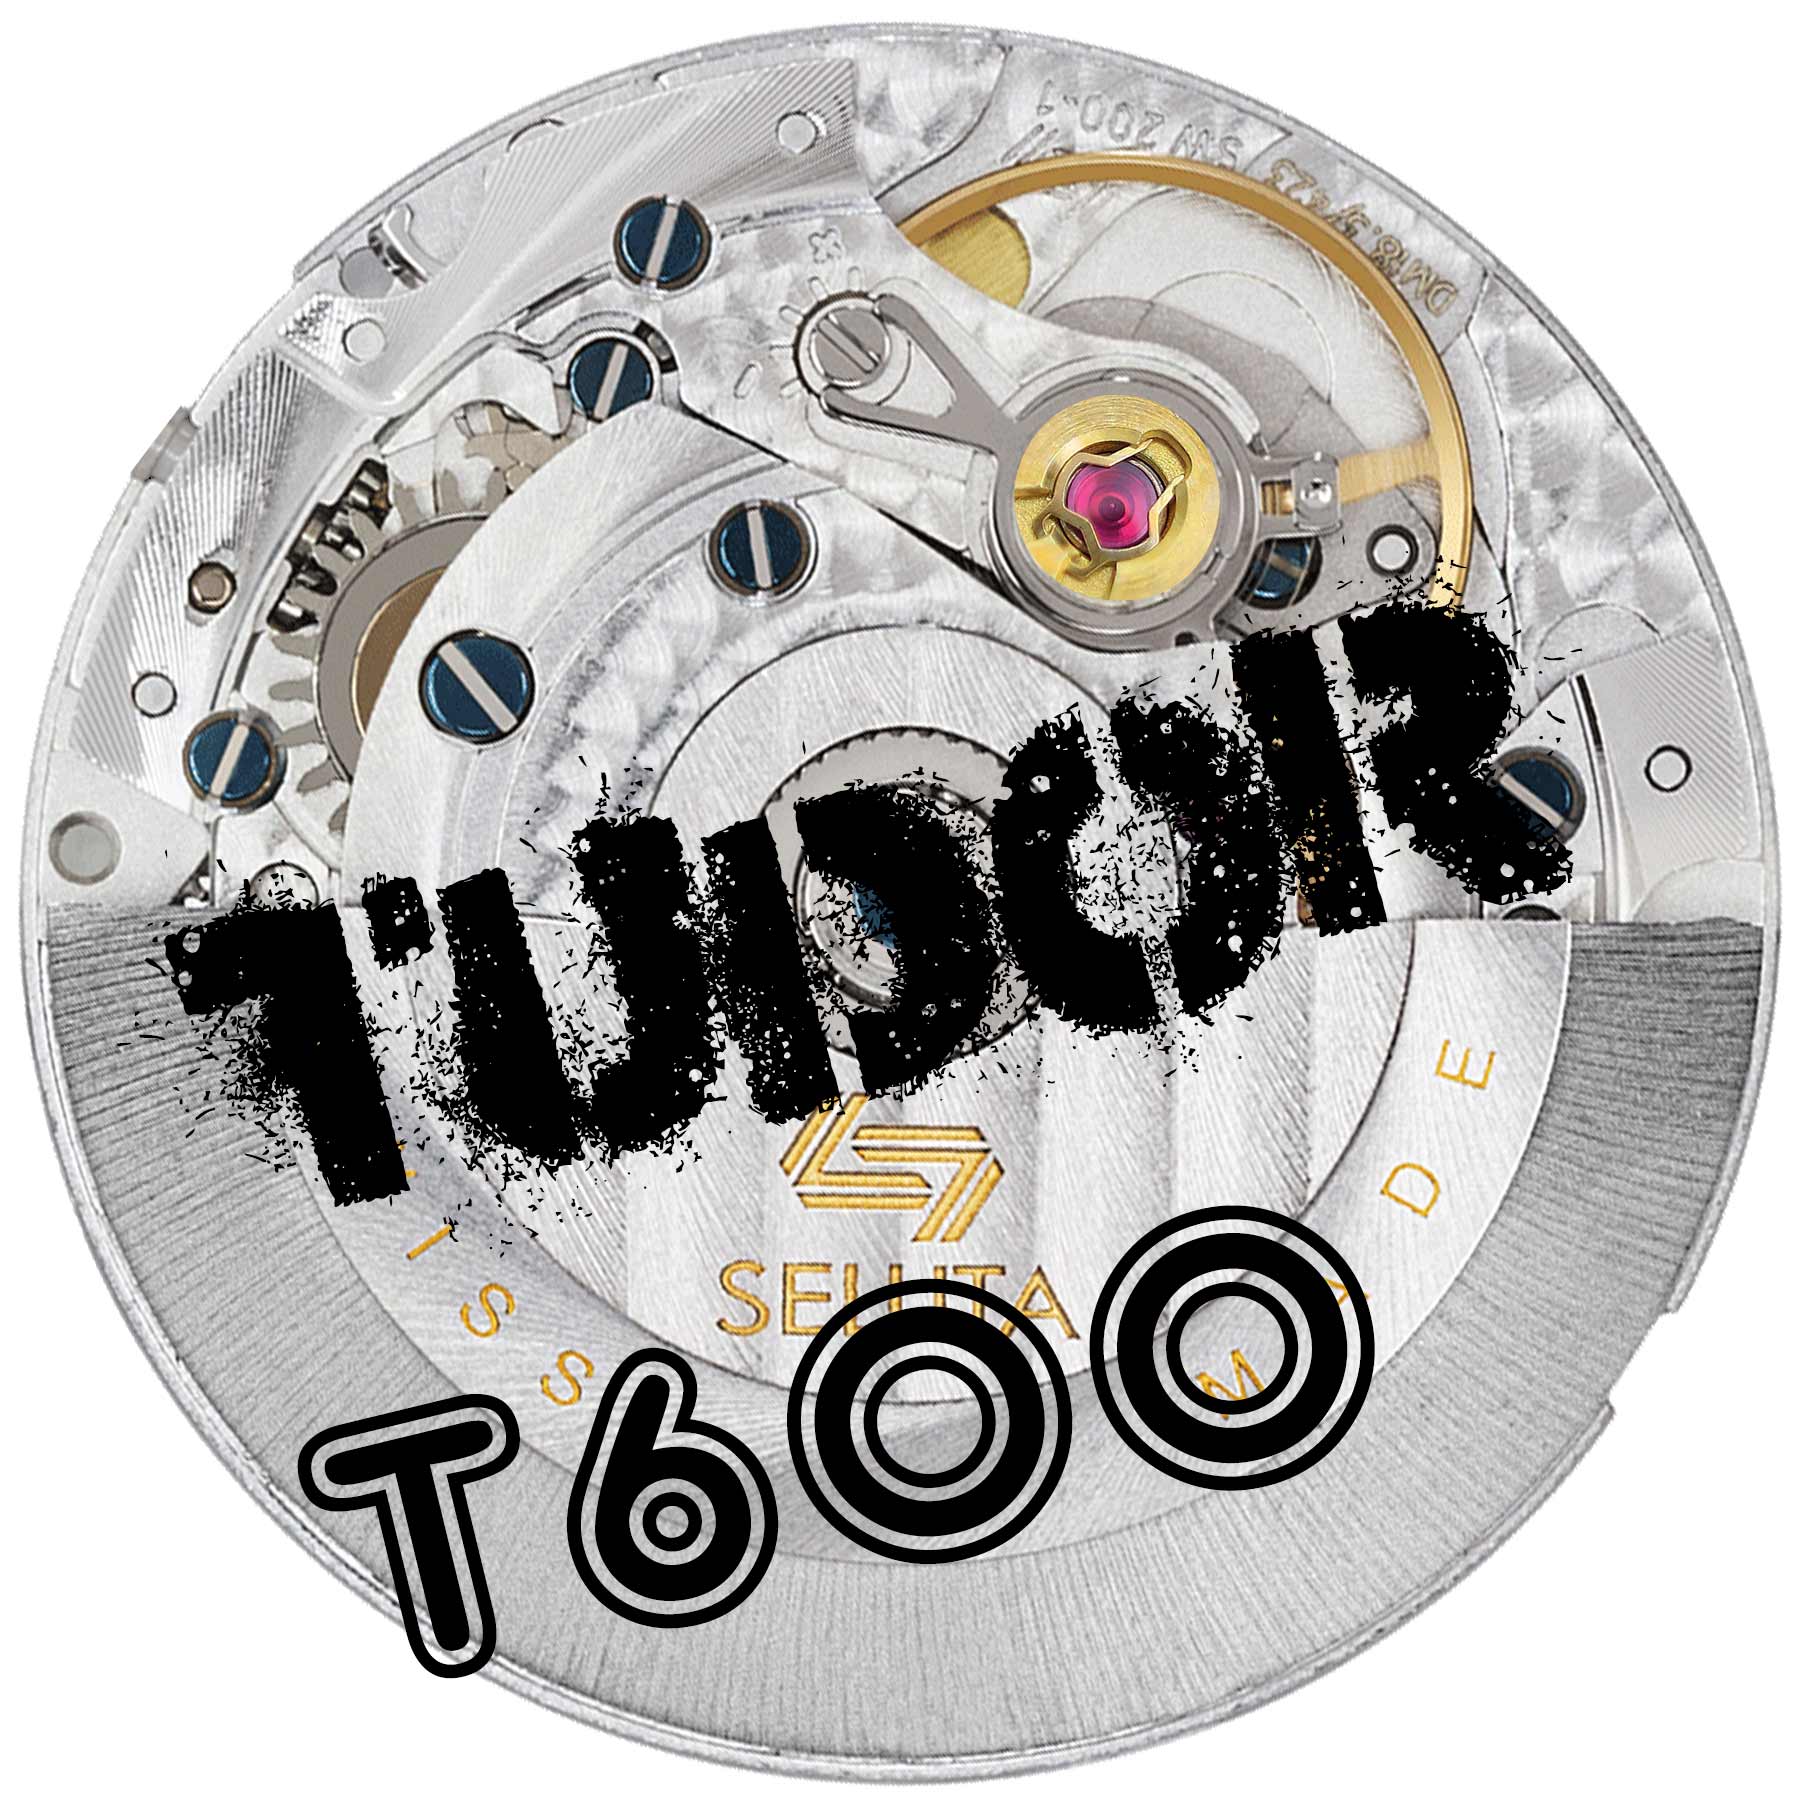 Tudor Calibre T600